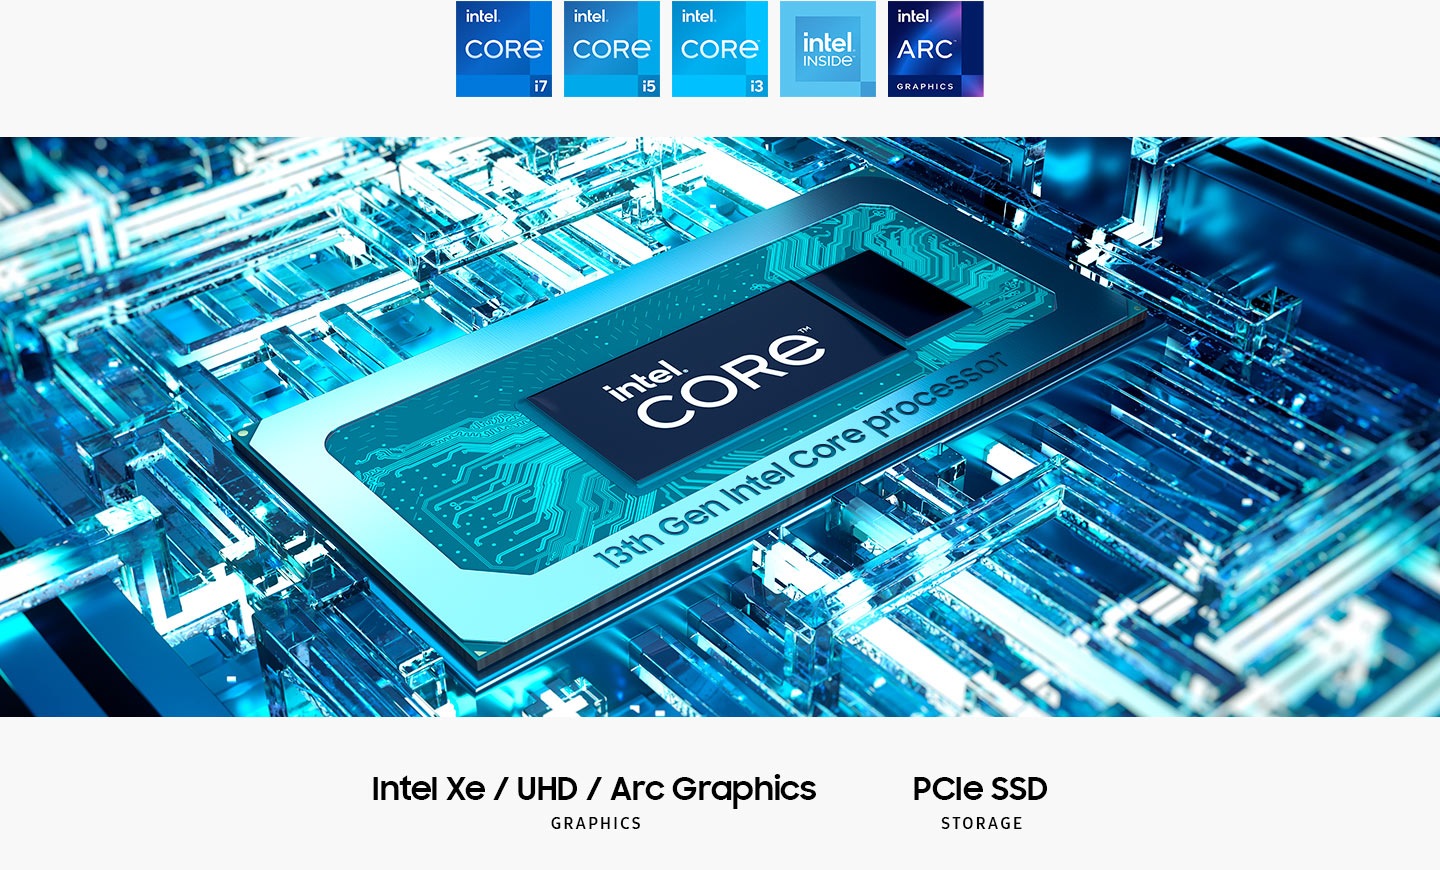 Procesor 13. generacji Intel® Core ™ znajduje się na płycie głównej z tekstem Intel® Core ™ na środku. Graphics Intel XE / UHD / ARC. PCIE SSD Storage. Wyświetlane są logo Intel Core i7, Intel Core i5, Intel Core i3, Intel Inside i Intel Arc